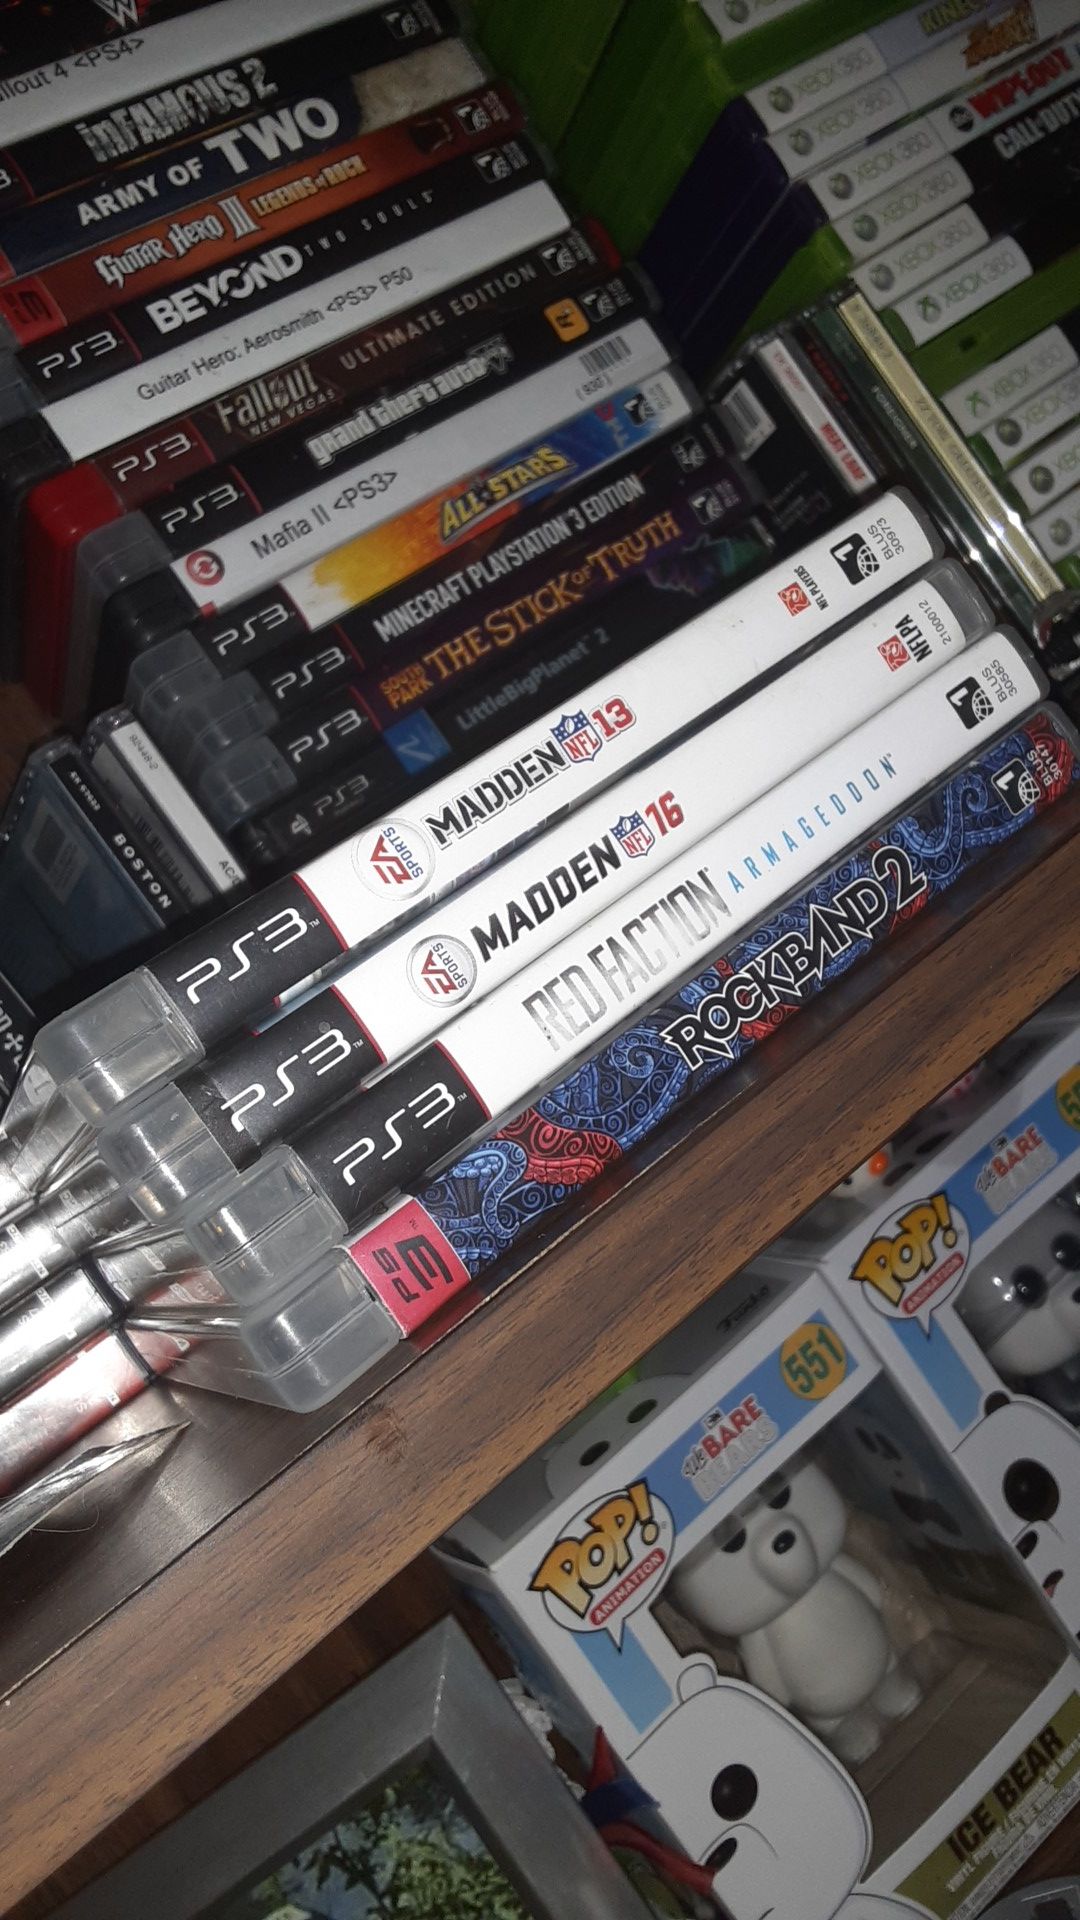 PS3 Games lot